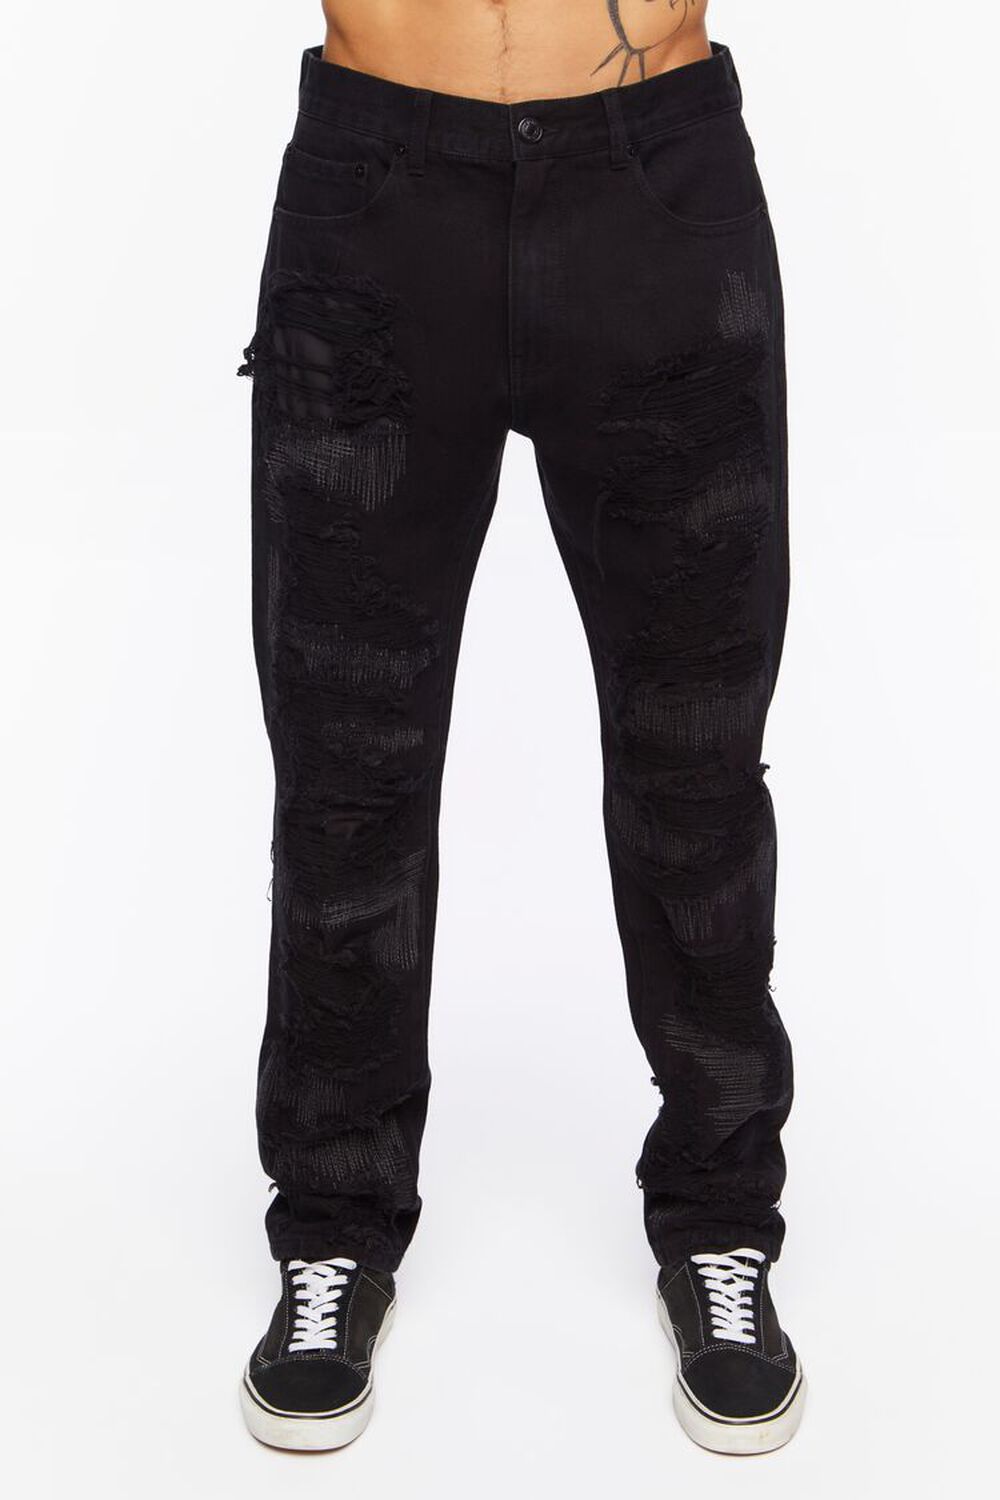 BLACK Destroyed Slim-Fit Jeans, image 2